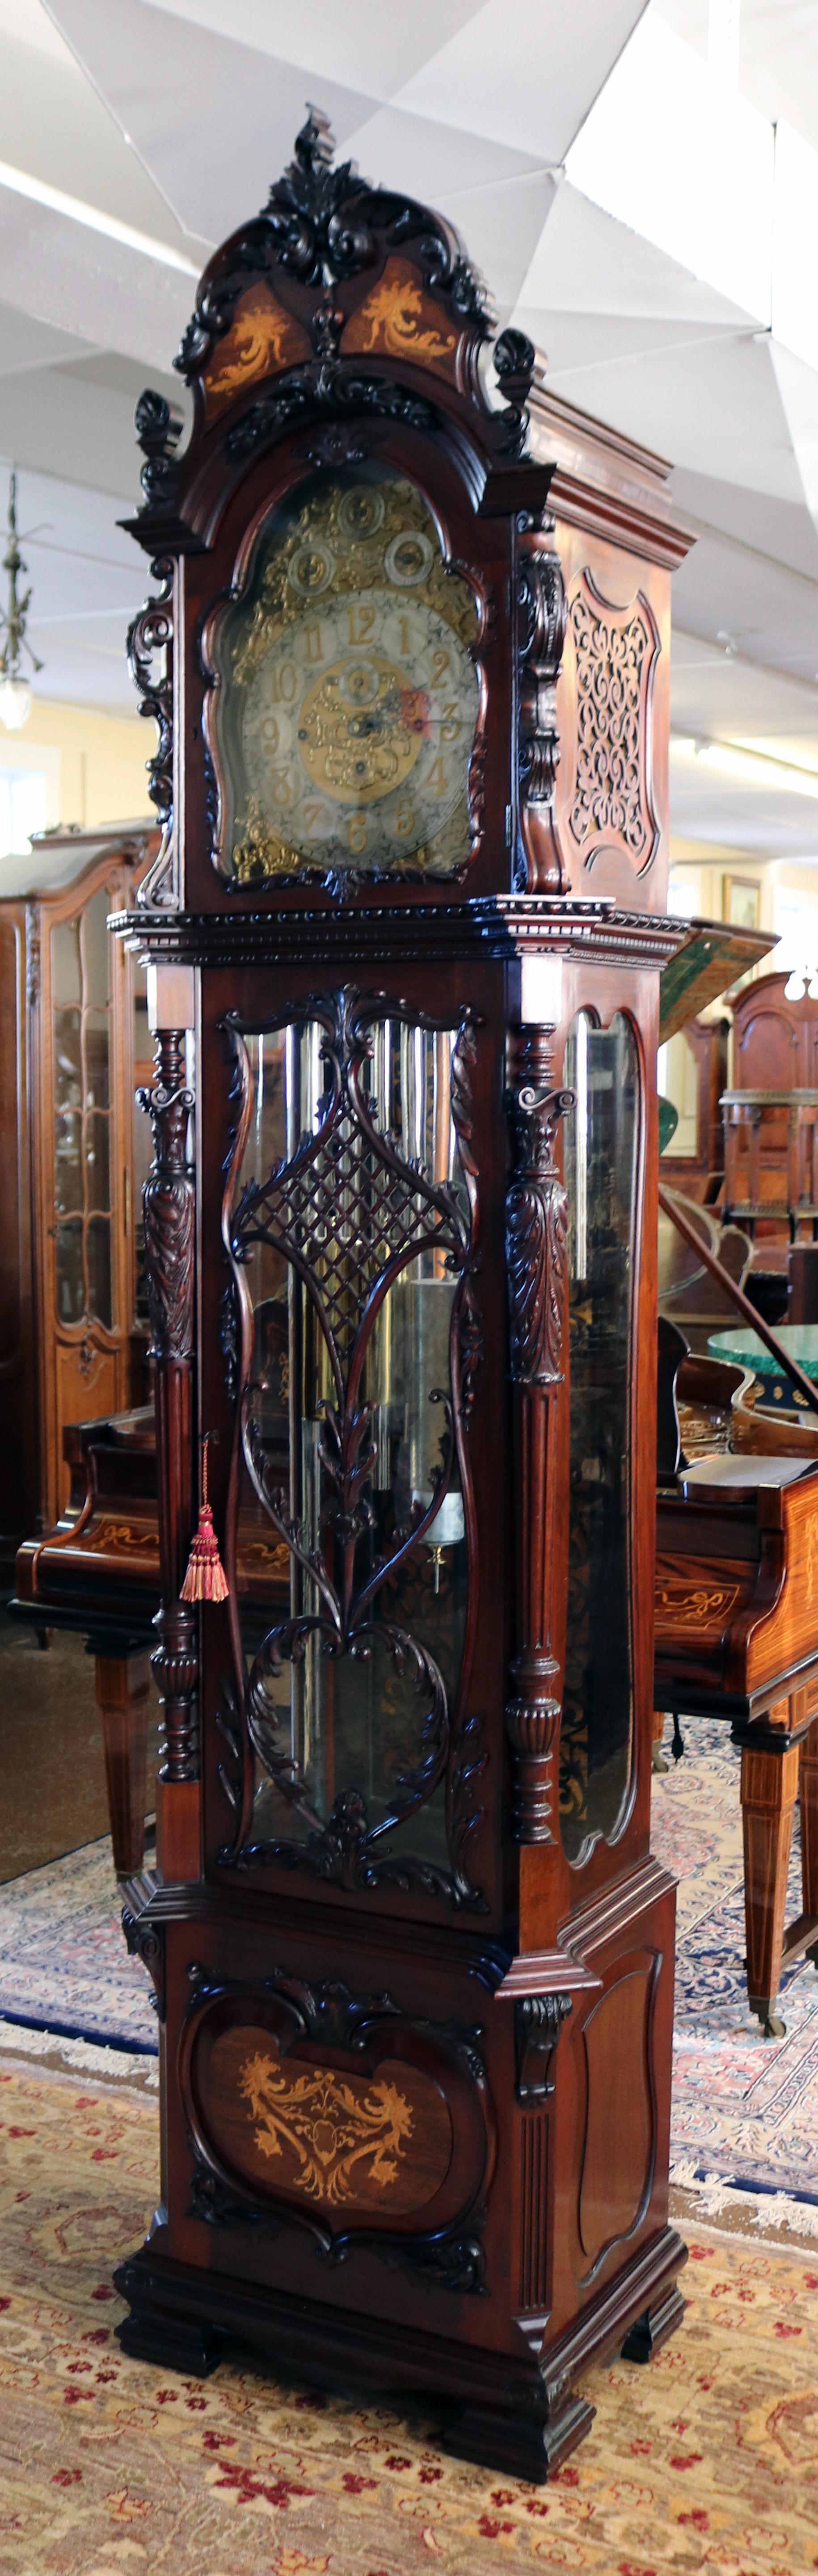 granddaughter clock antique